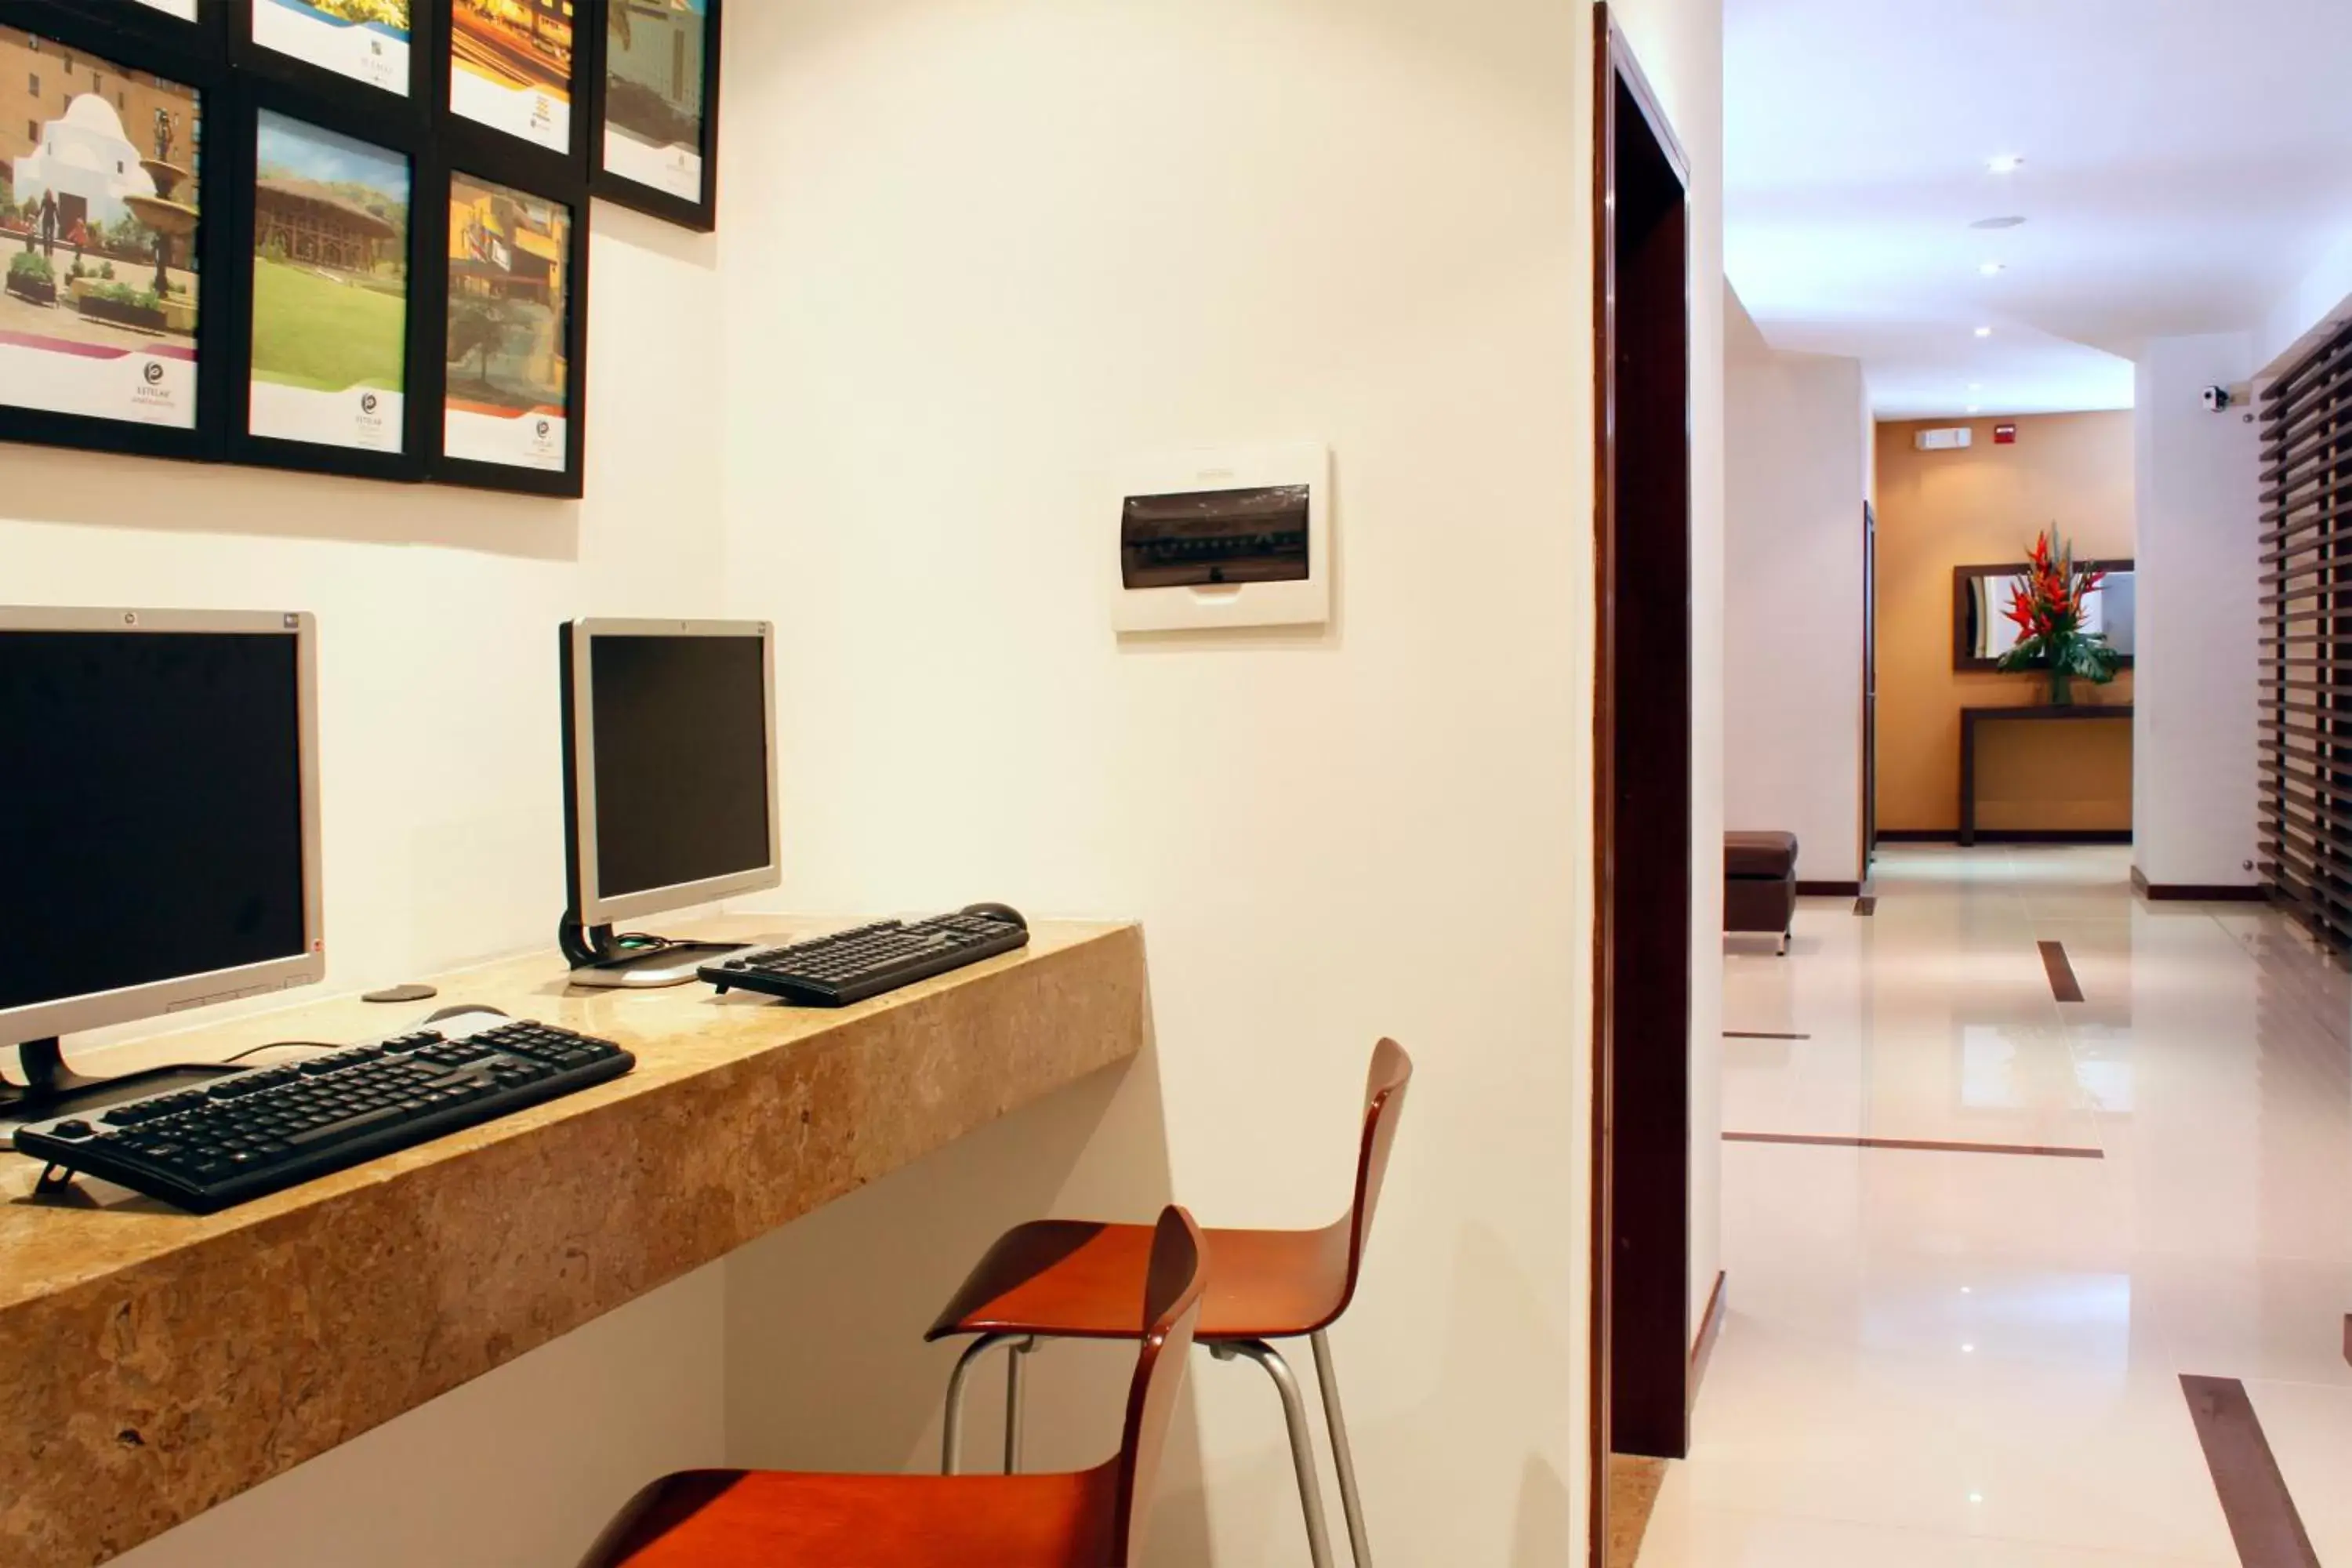 Business facilities in Hotel Estelar El Cable